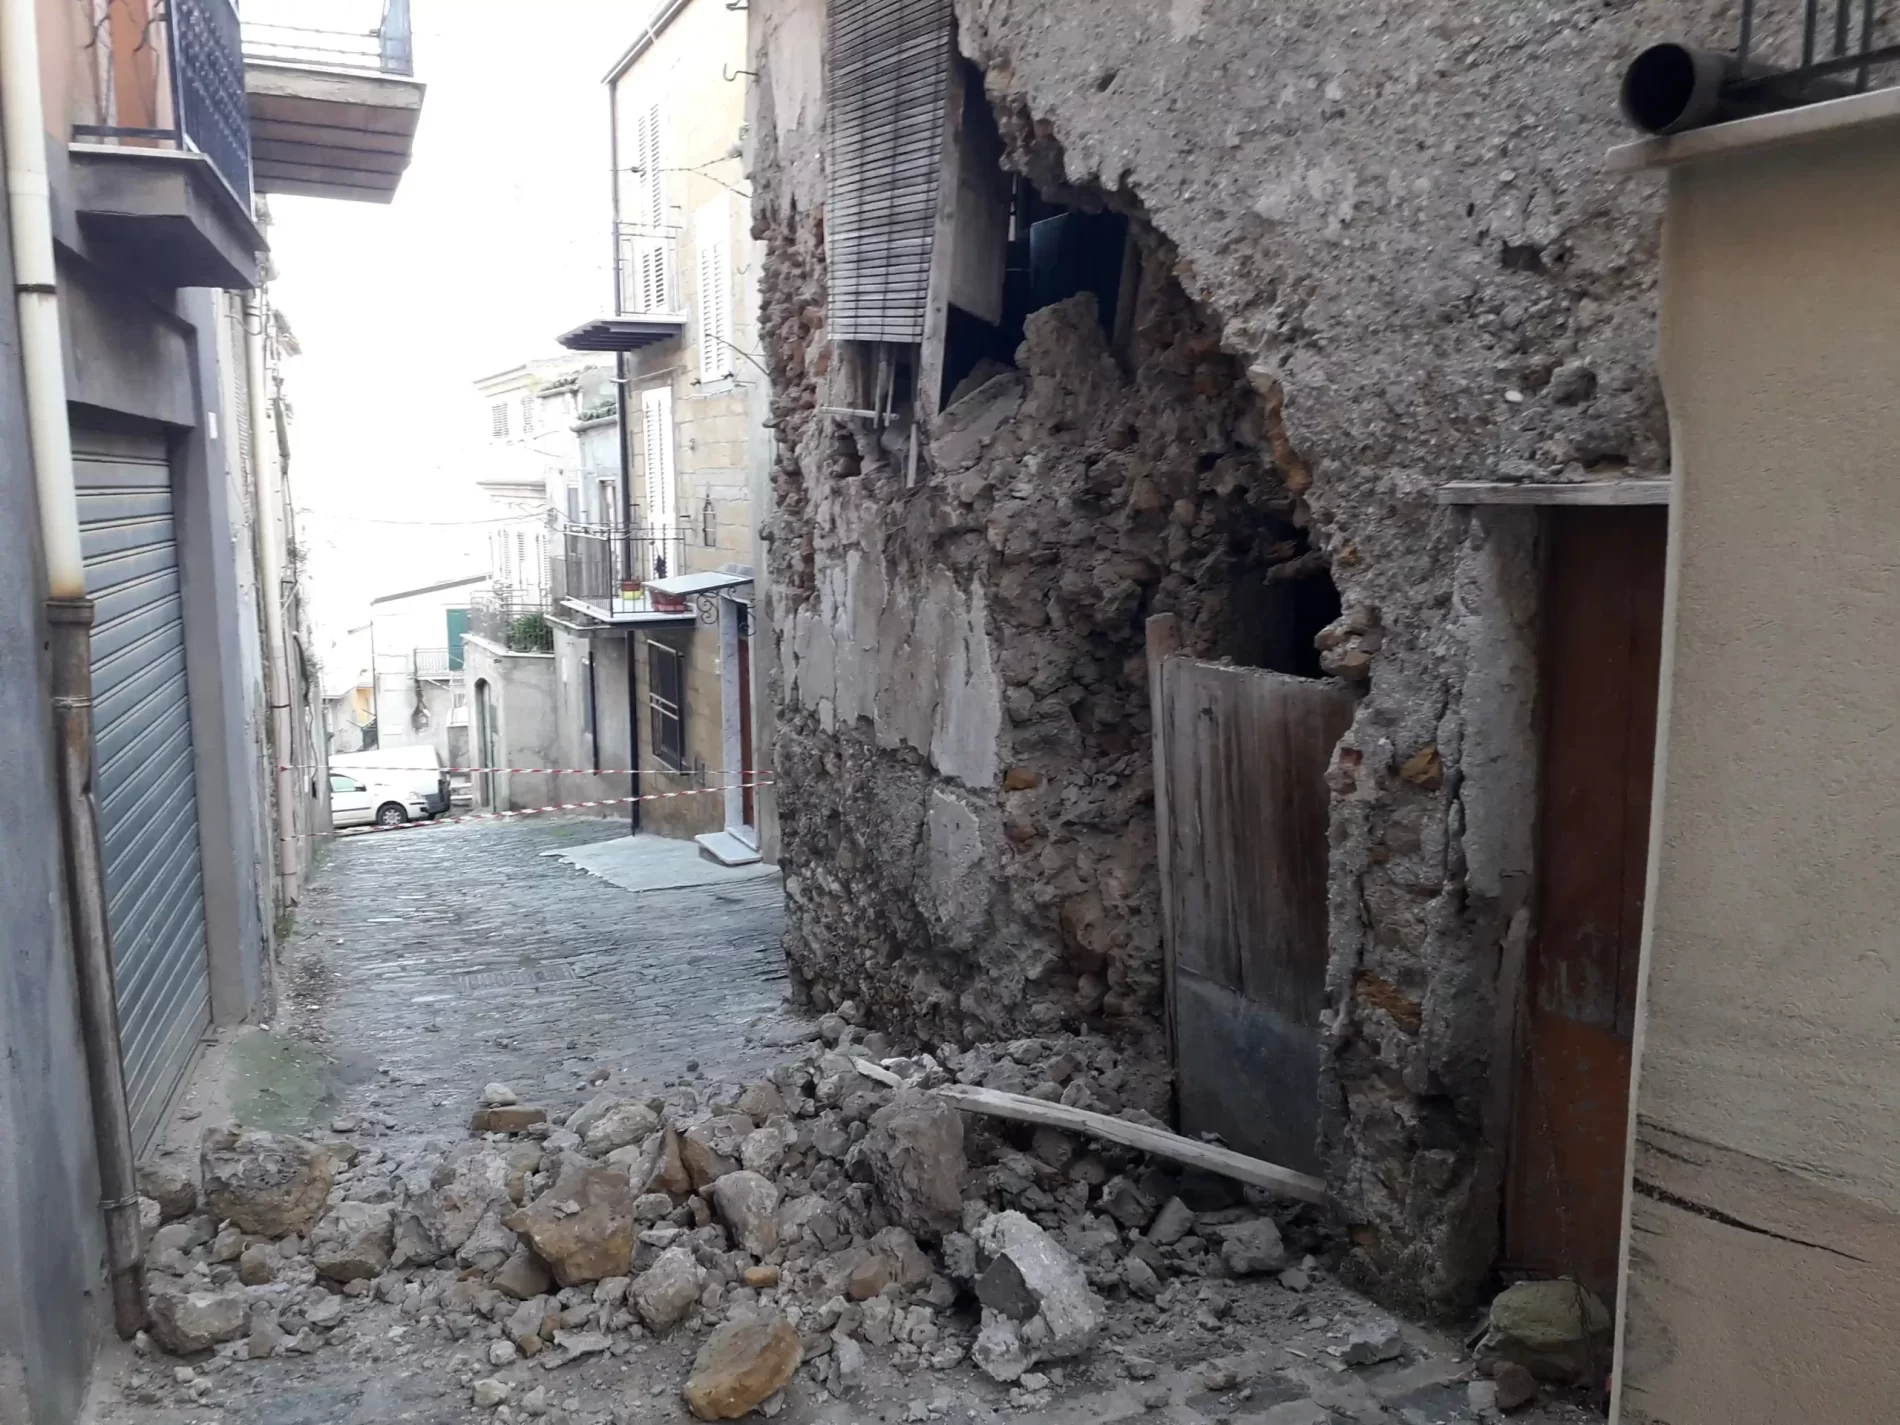 PIETRAPERZIA. Crollata un’ampia porzione della facciata di una casa di via Riva.